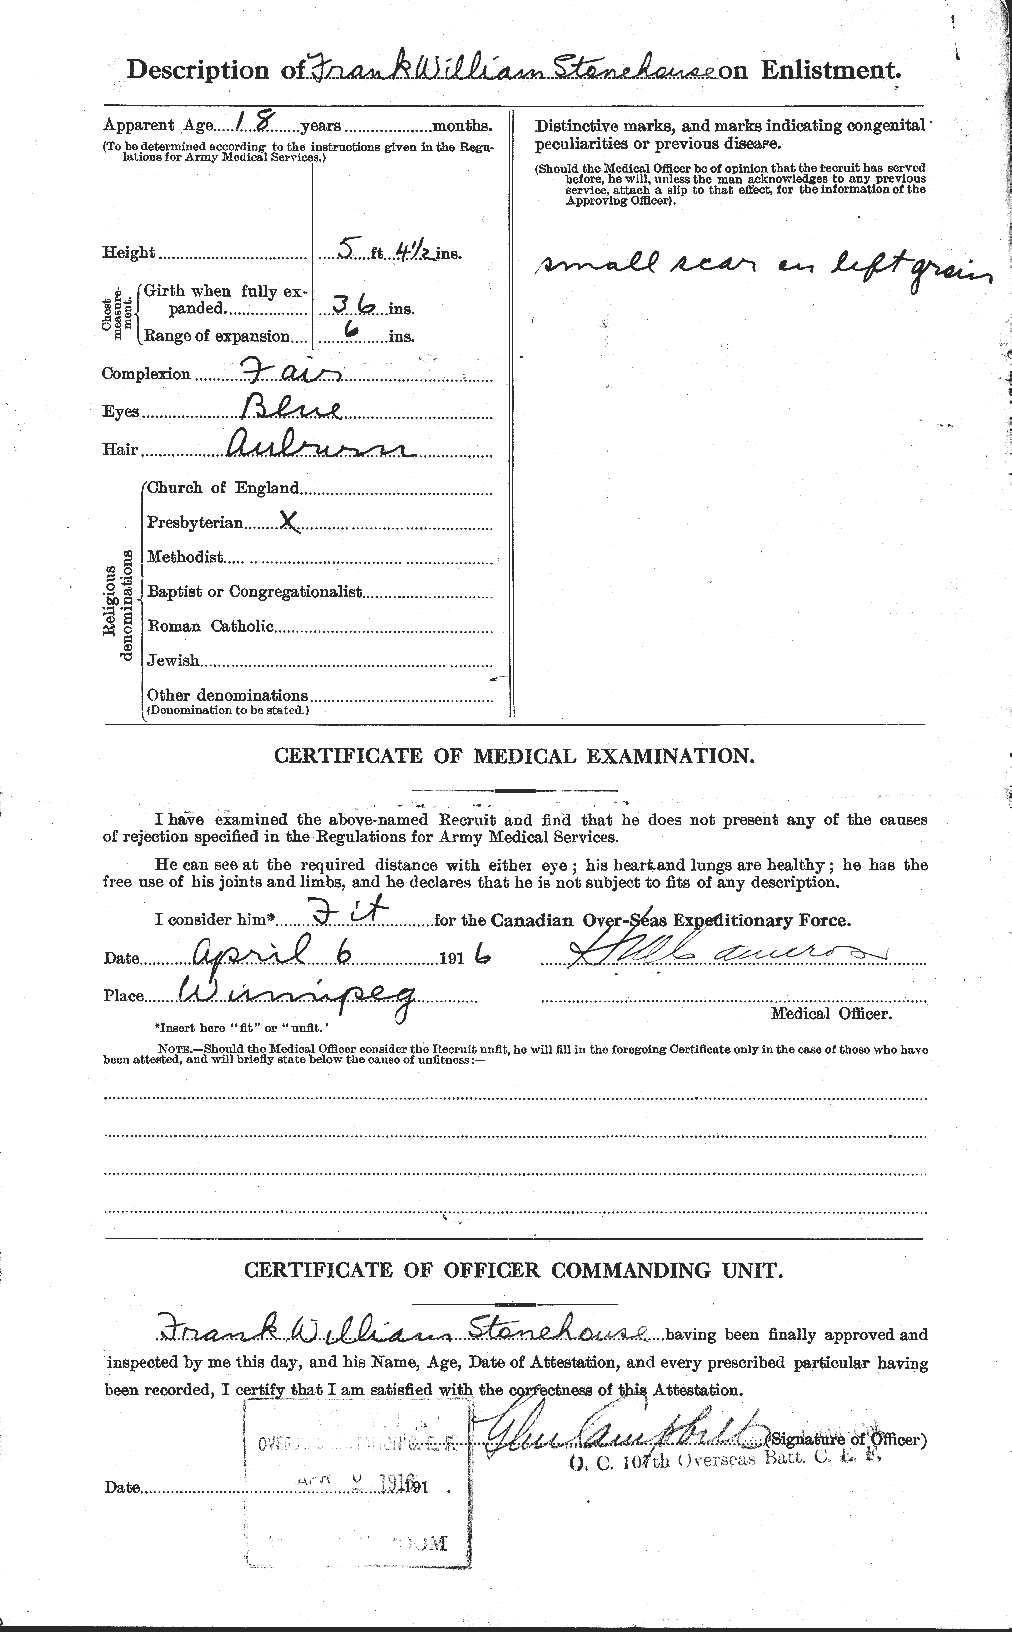 Dossiers du Personnel de la Première Guerre mondiale - CEC 121539b